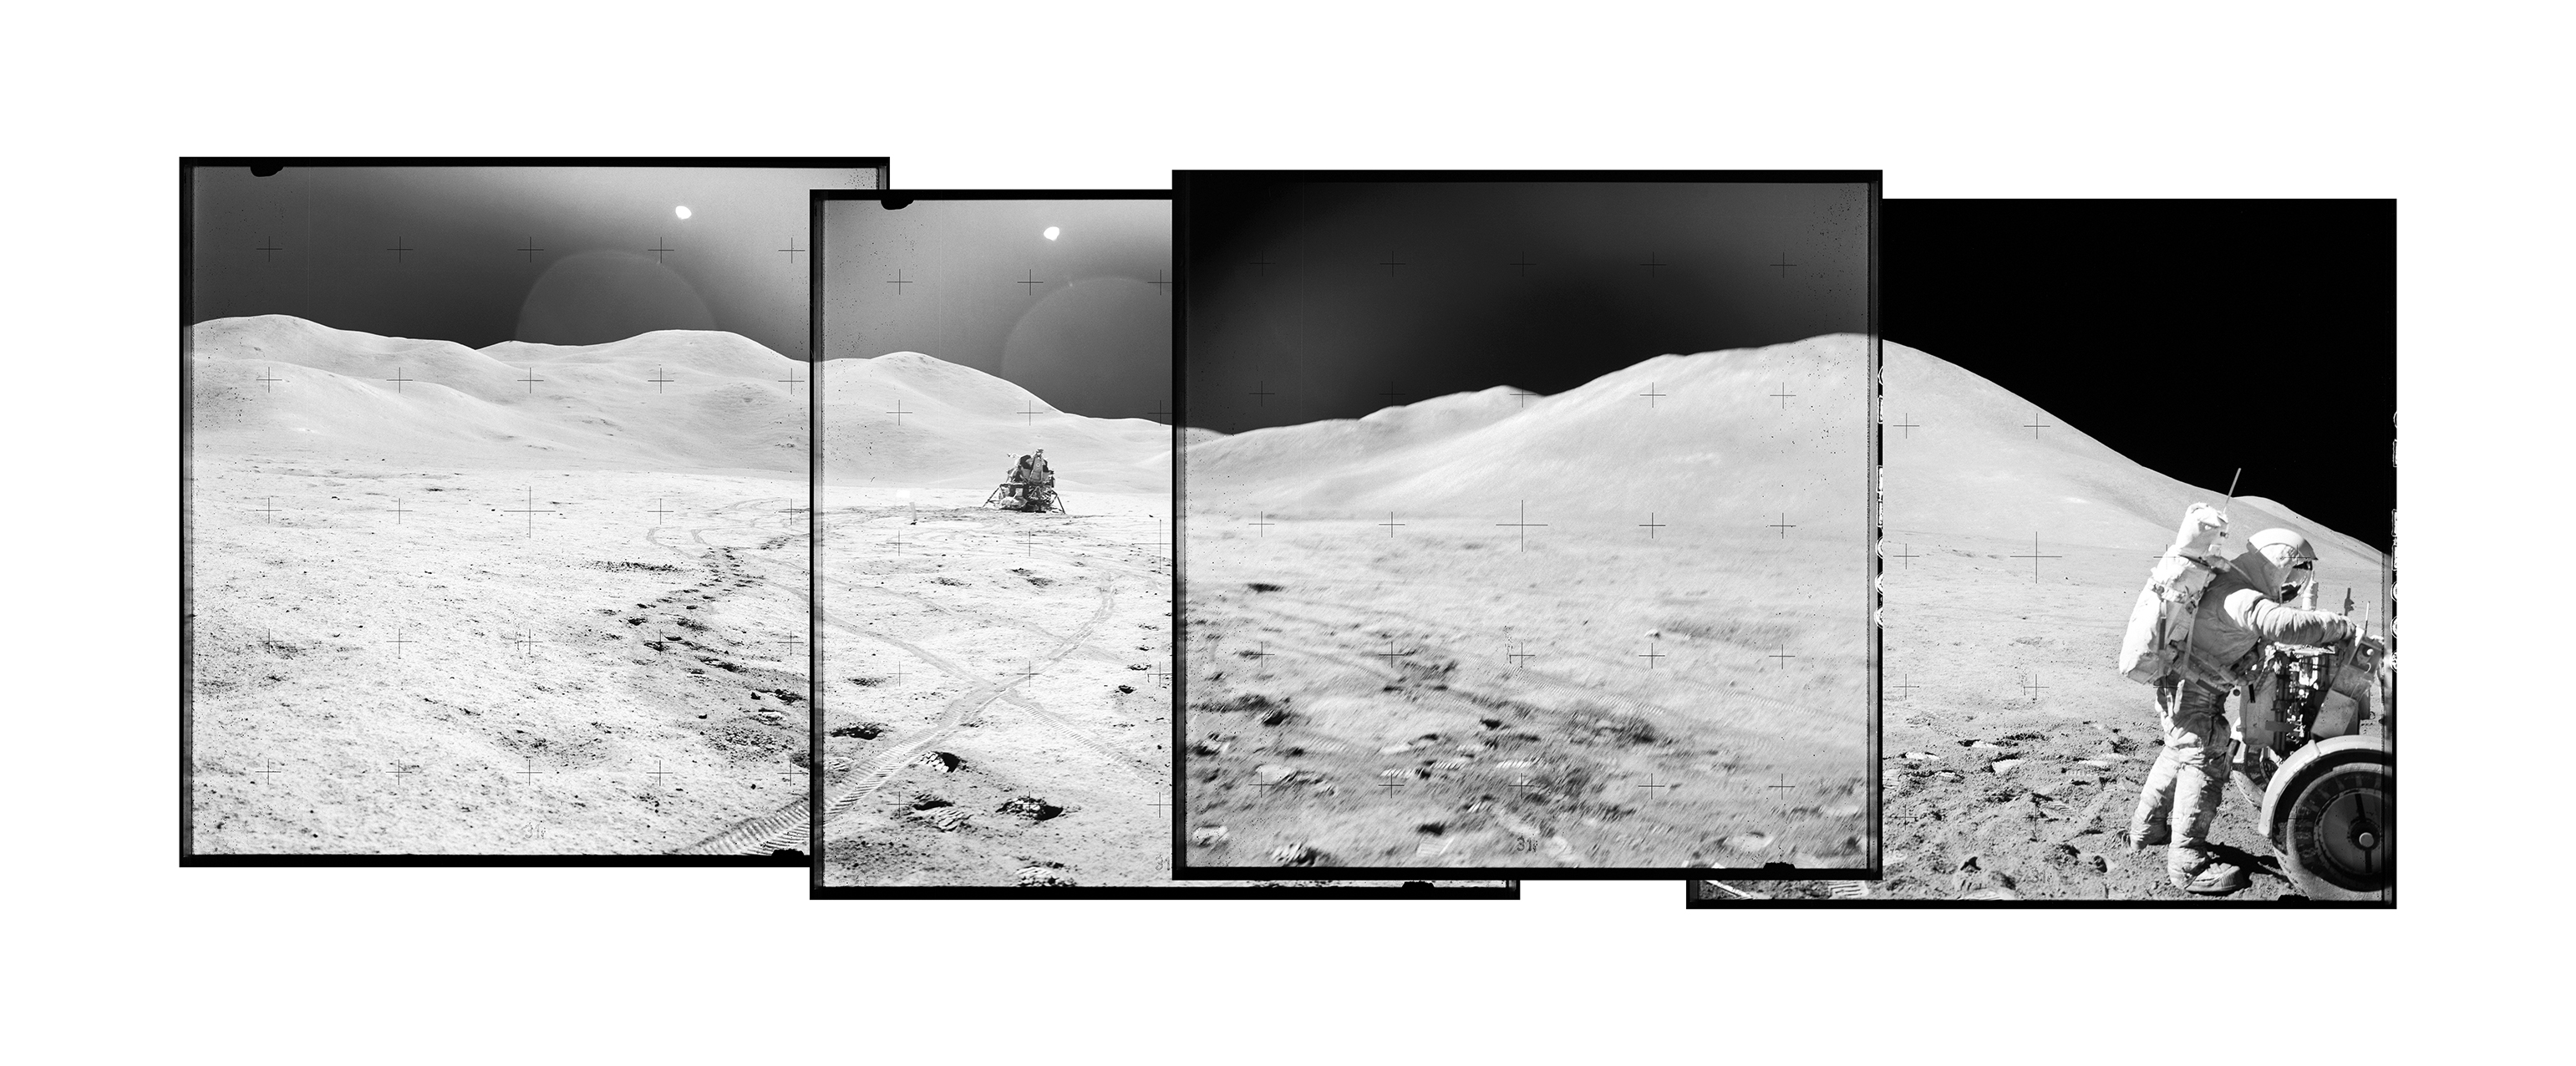 Astronaute et véhicule itinérant lunaire photographiés sur la Lune lors d'une mission Apollo